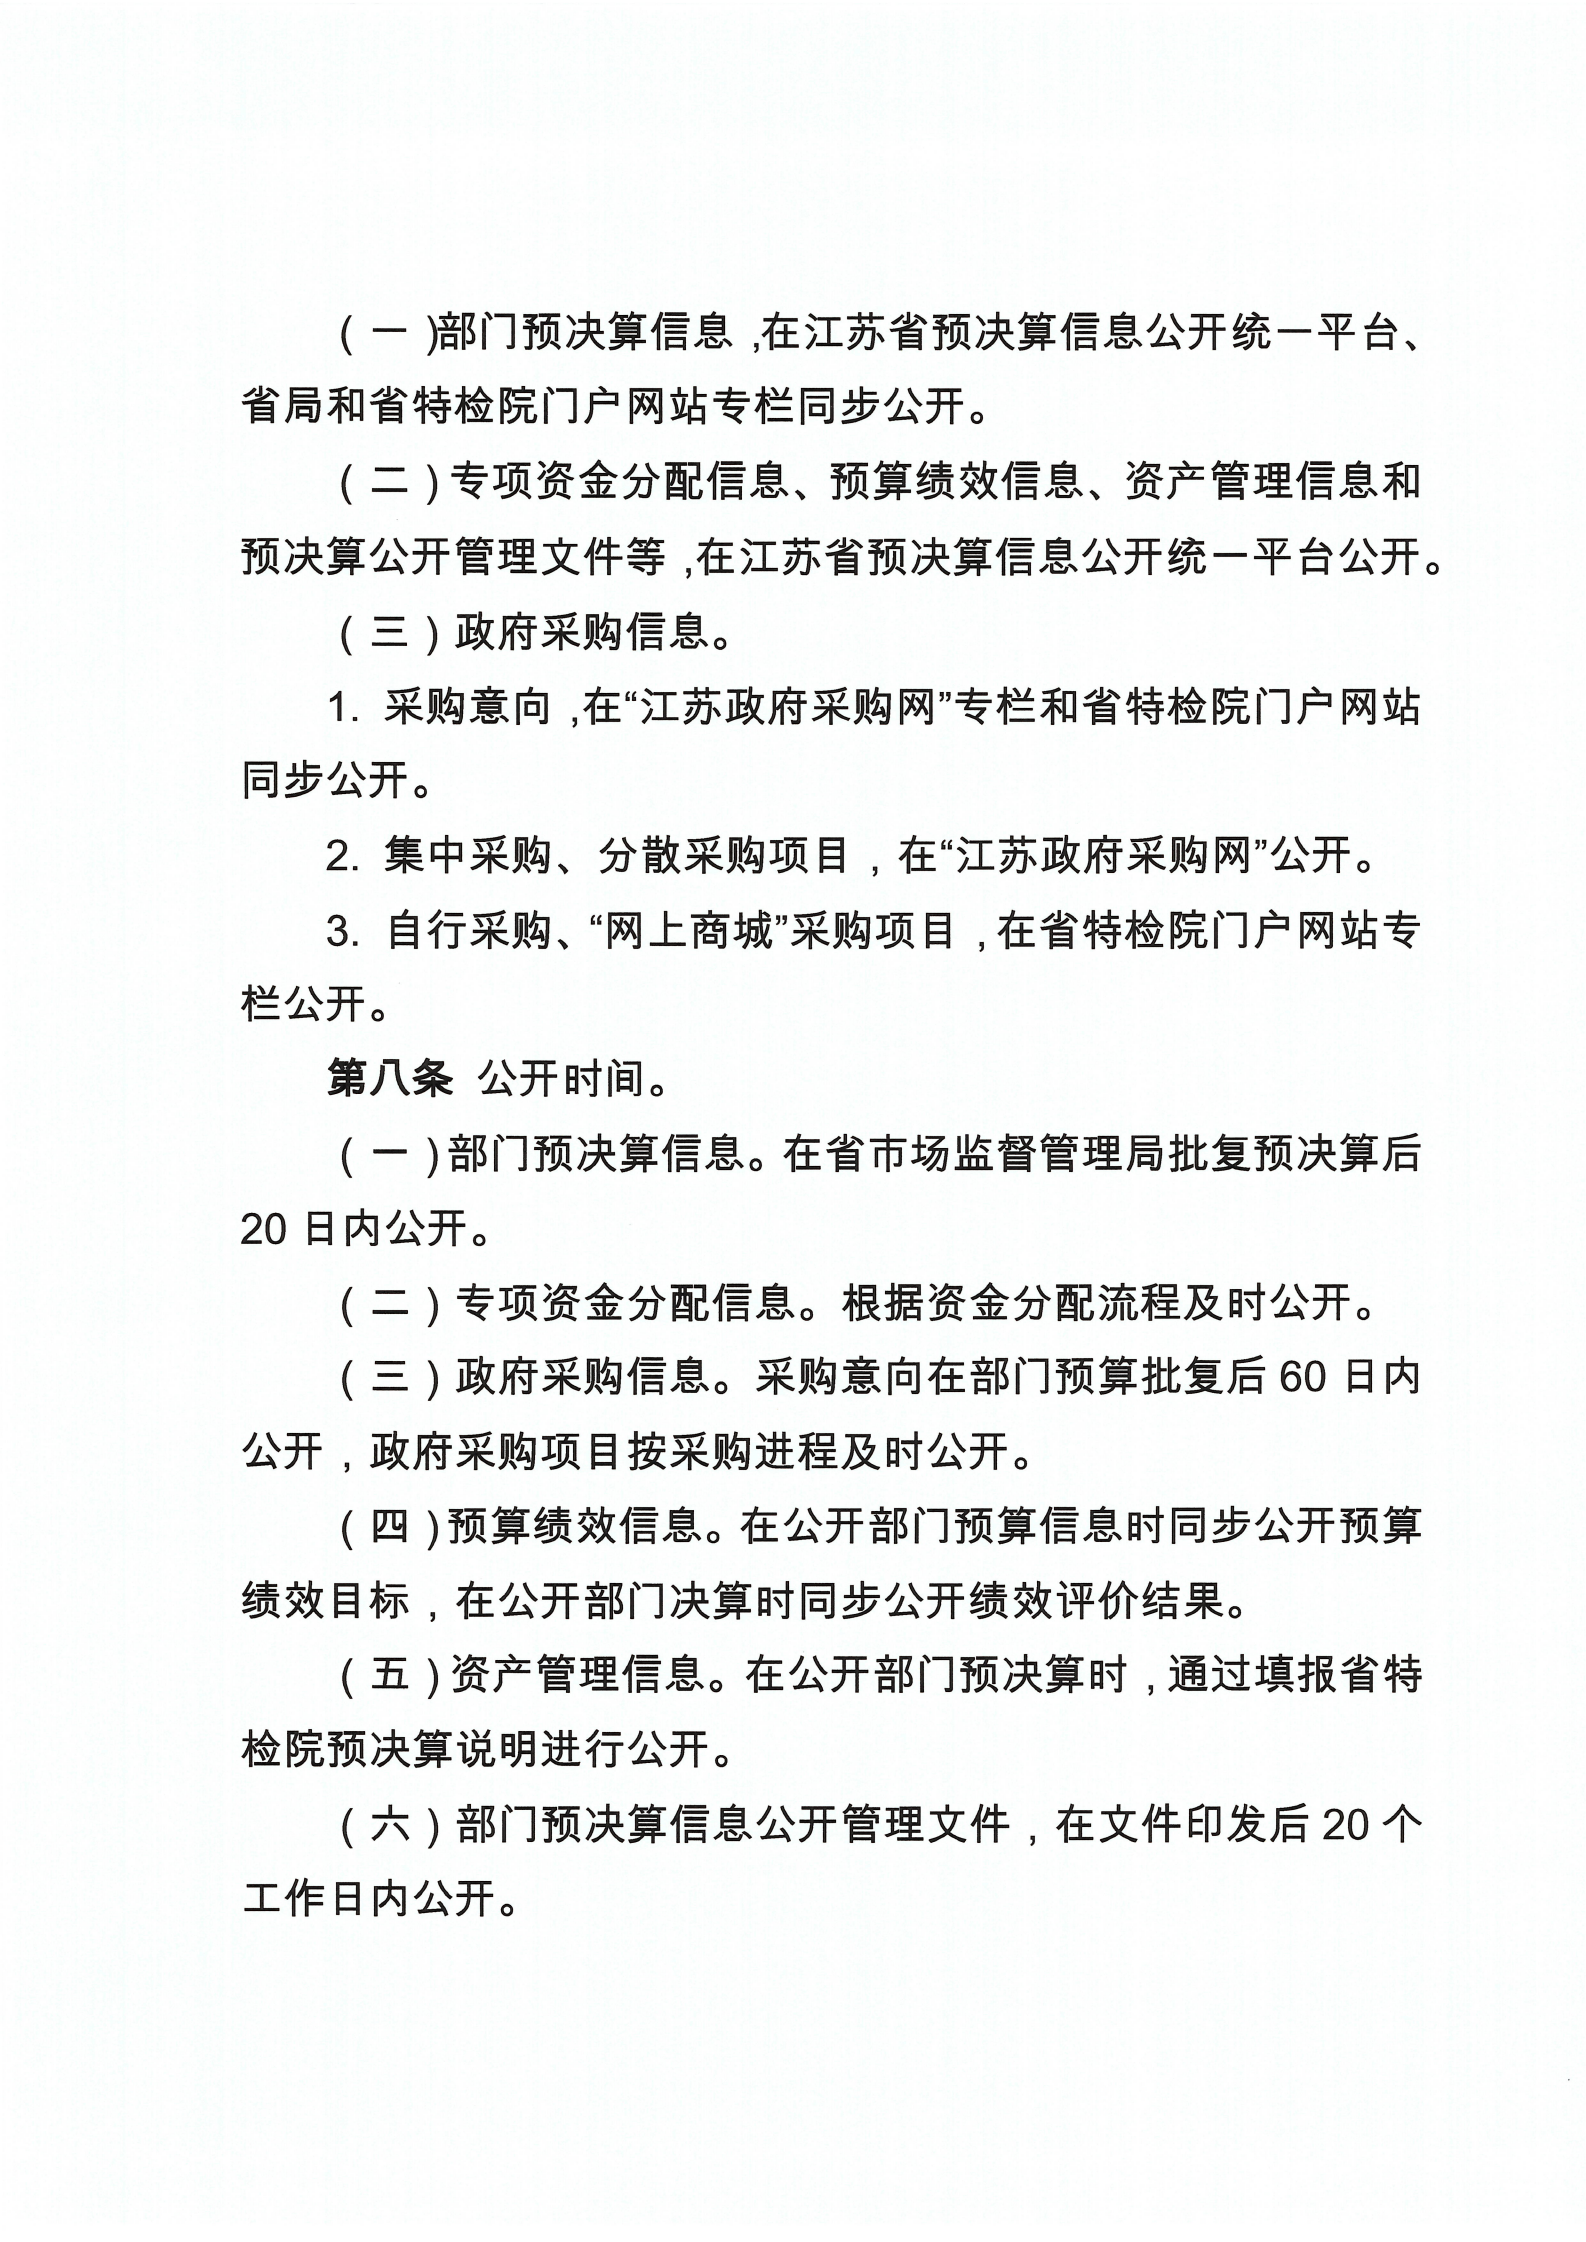 江苏省特种设备安全监督检验研究院部门预决算信息公开管理暂行办法_04.png